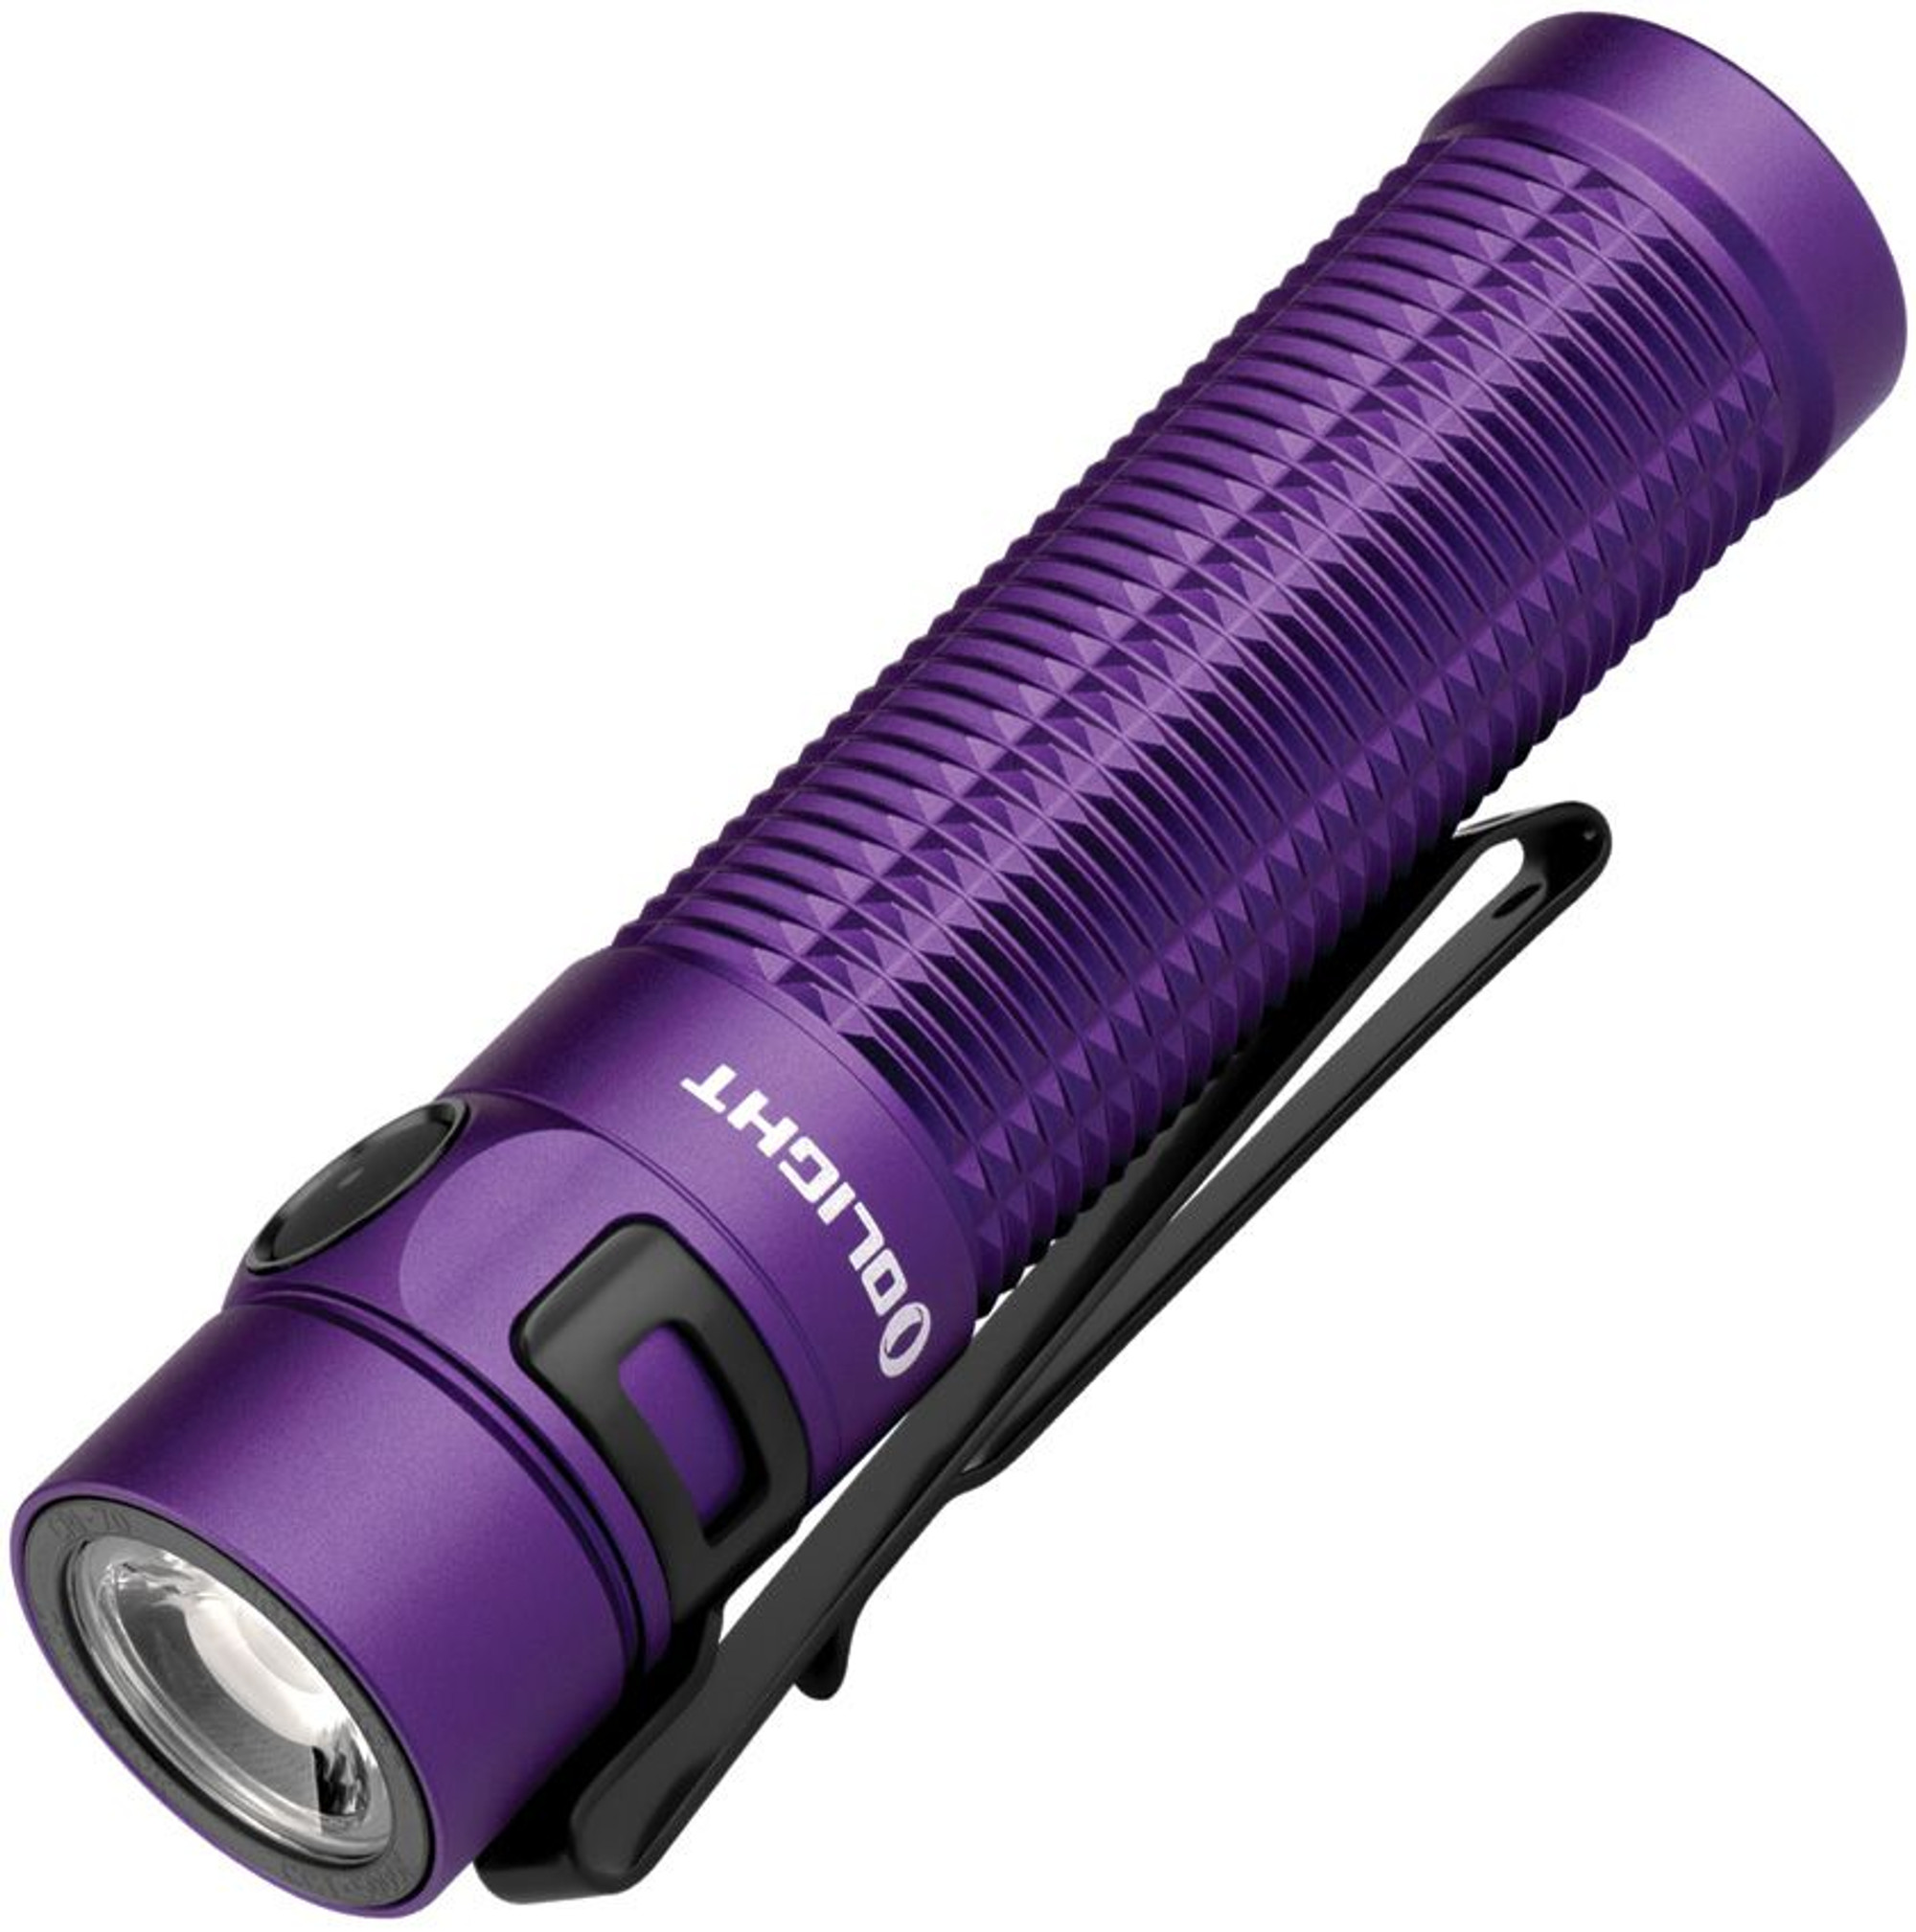 Baton 3 Pro Max Purple
